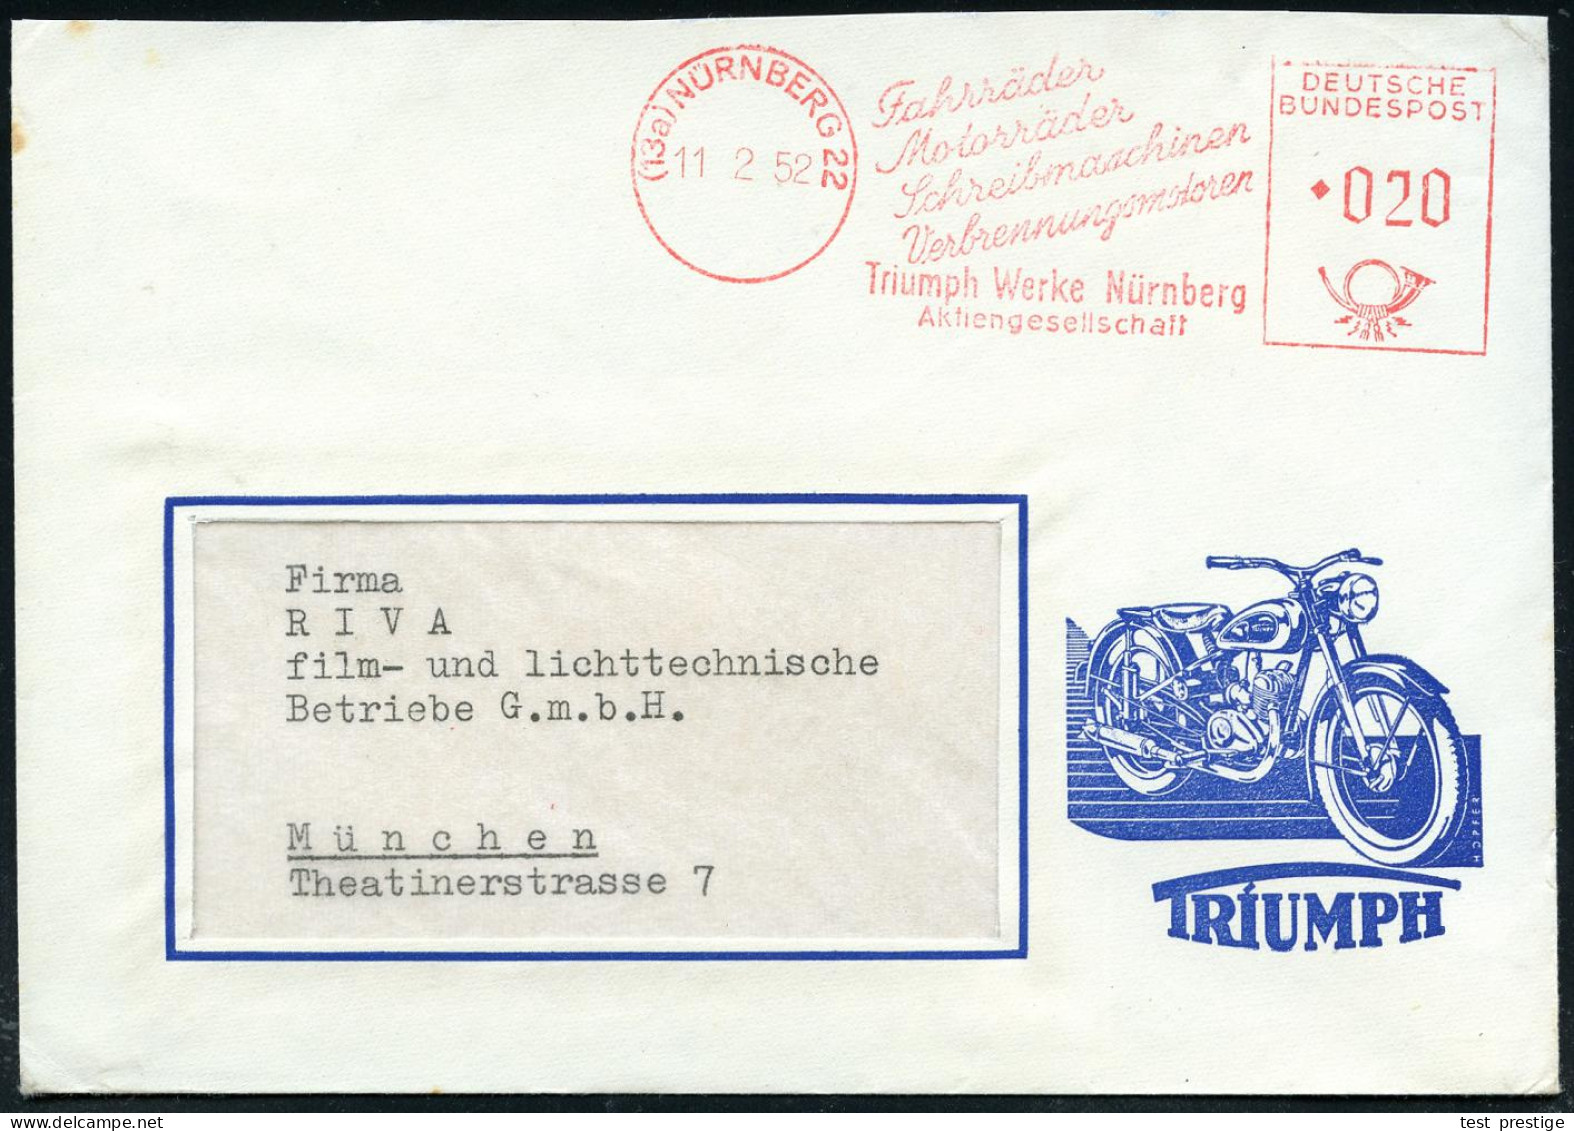 (13a) NÜRNBERG 22/ Fahrräder/ Motrräder/ Schreibmaschinen../ Triumph-Werke.. 1952 (11.2.) AFS Auf Reklame-Bf.: Mit TRIUM - Motorbikes